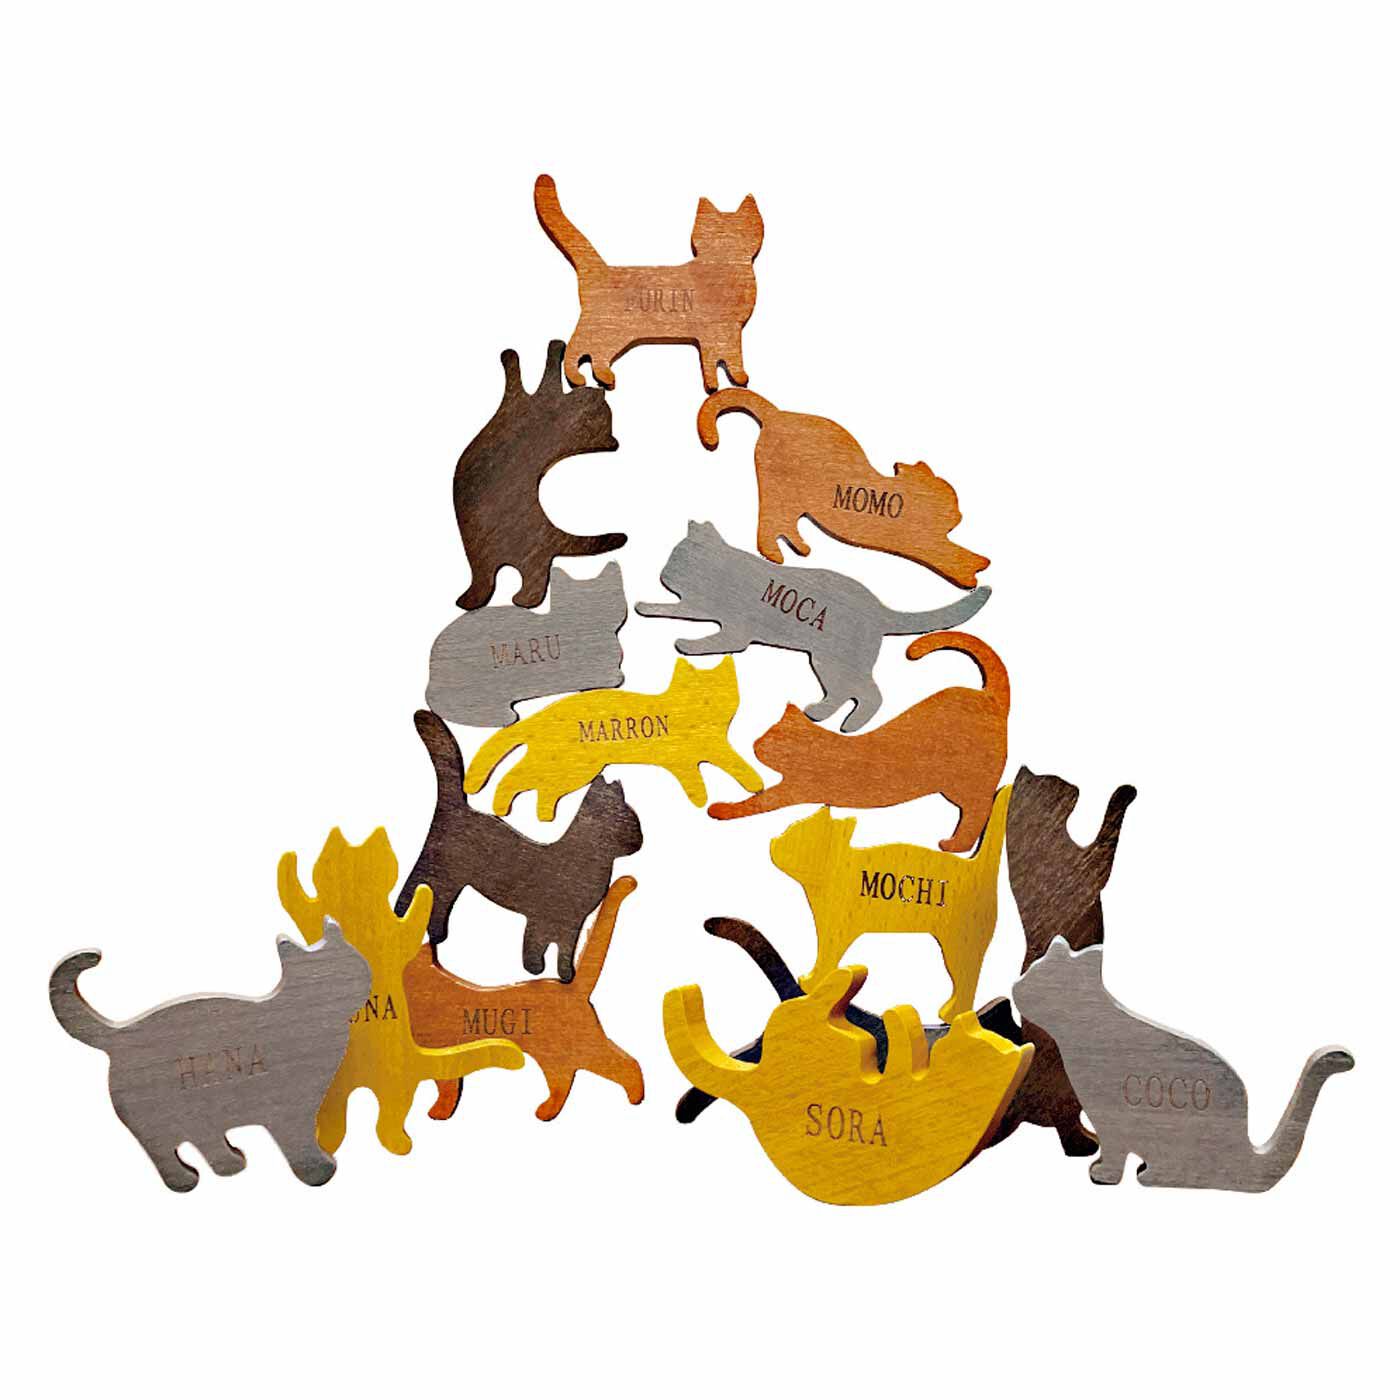 L'AMIPLUS|ラミプリュス　大人も子どもも夢中になれちゃう 飾れる脳トレ積み木の会|〈ネコ〉